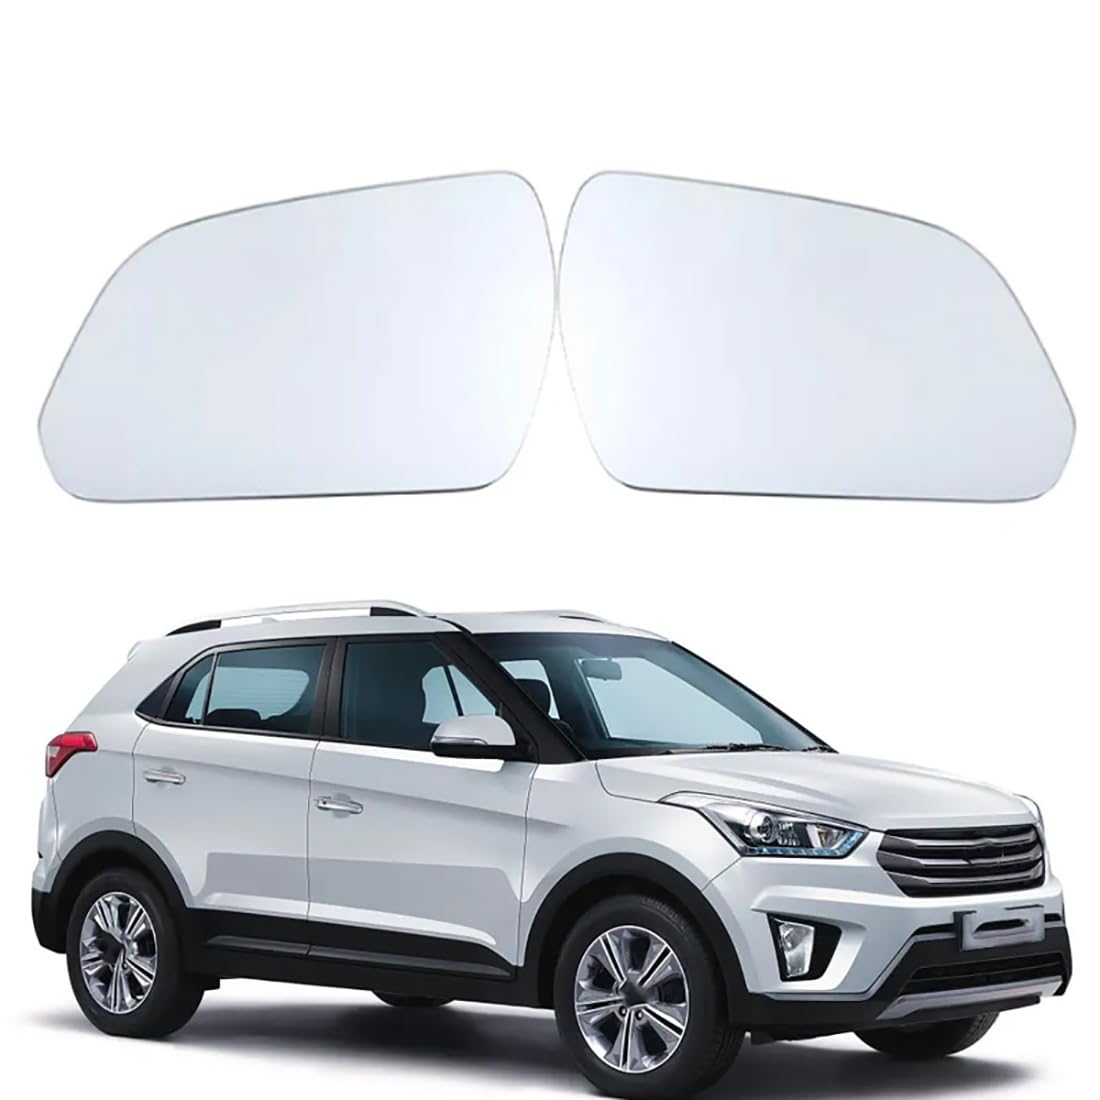 Austauschbarer Auto-Außenspiegel aus Beheizbarem Glas für Hyundai Creta 2015-2019,beheizbarer Rückspiegel für Fahrer und Beifahrer Links/rechts,A-Left von YujieNB